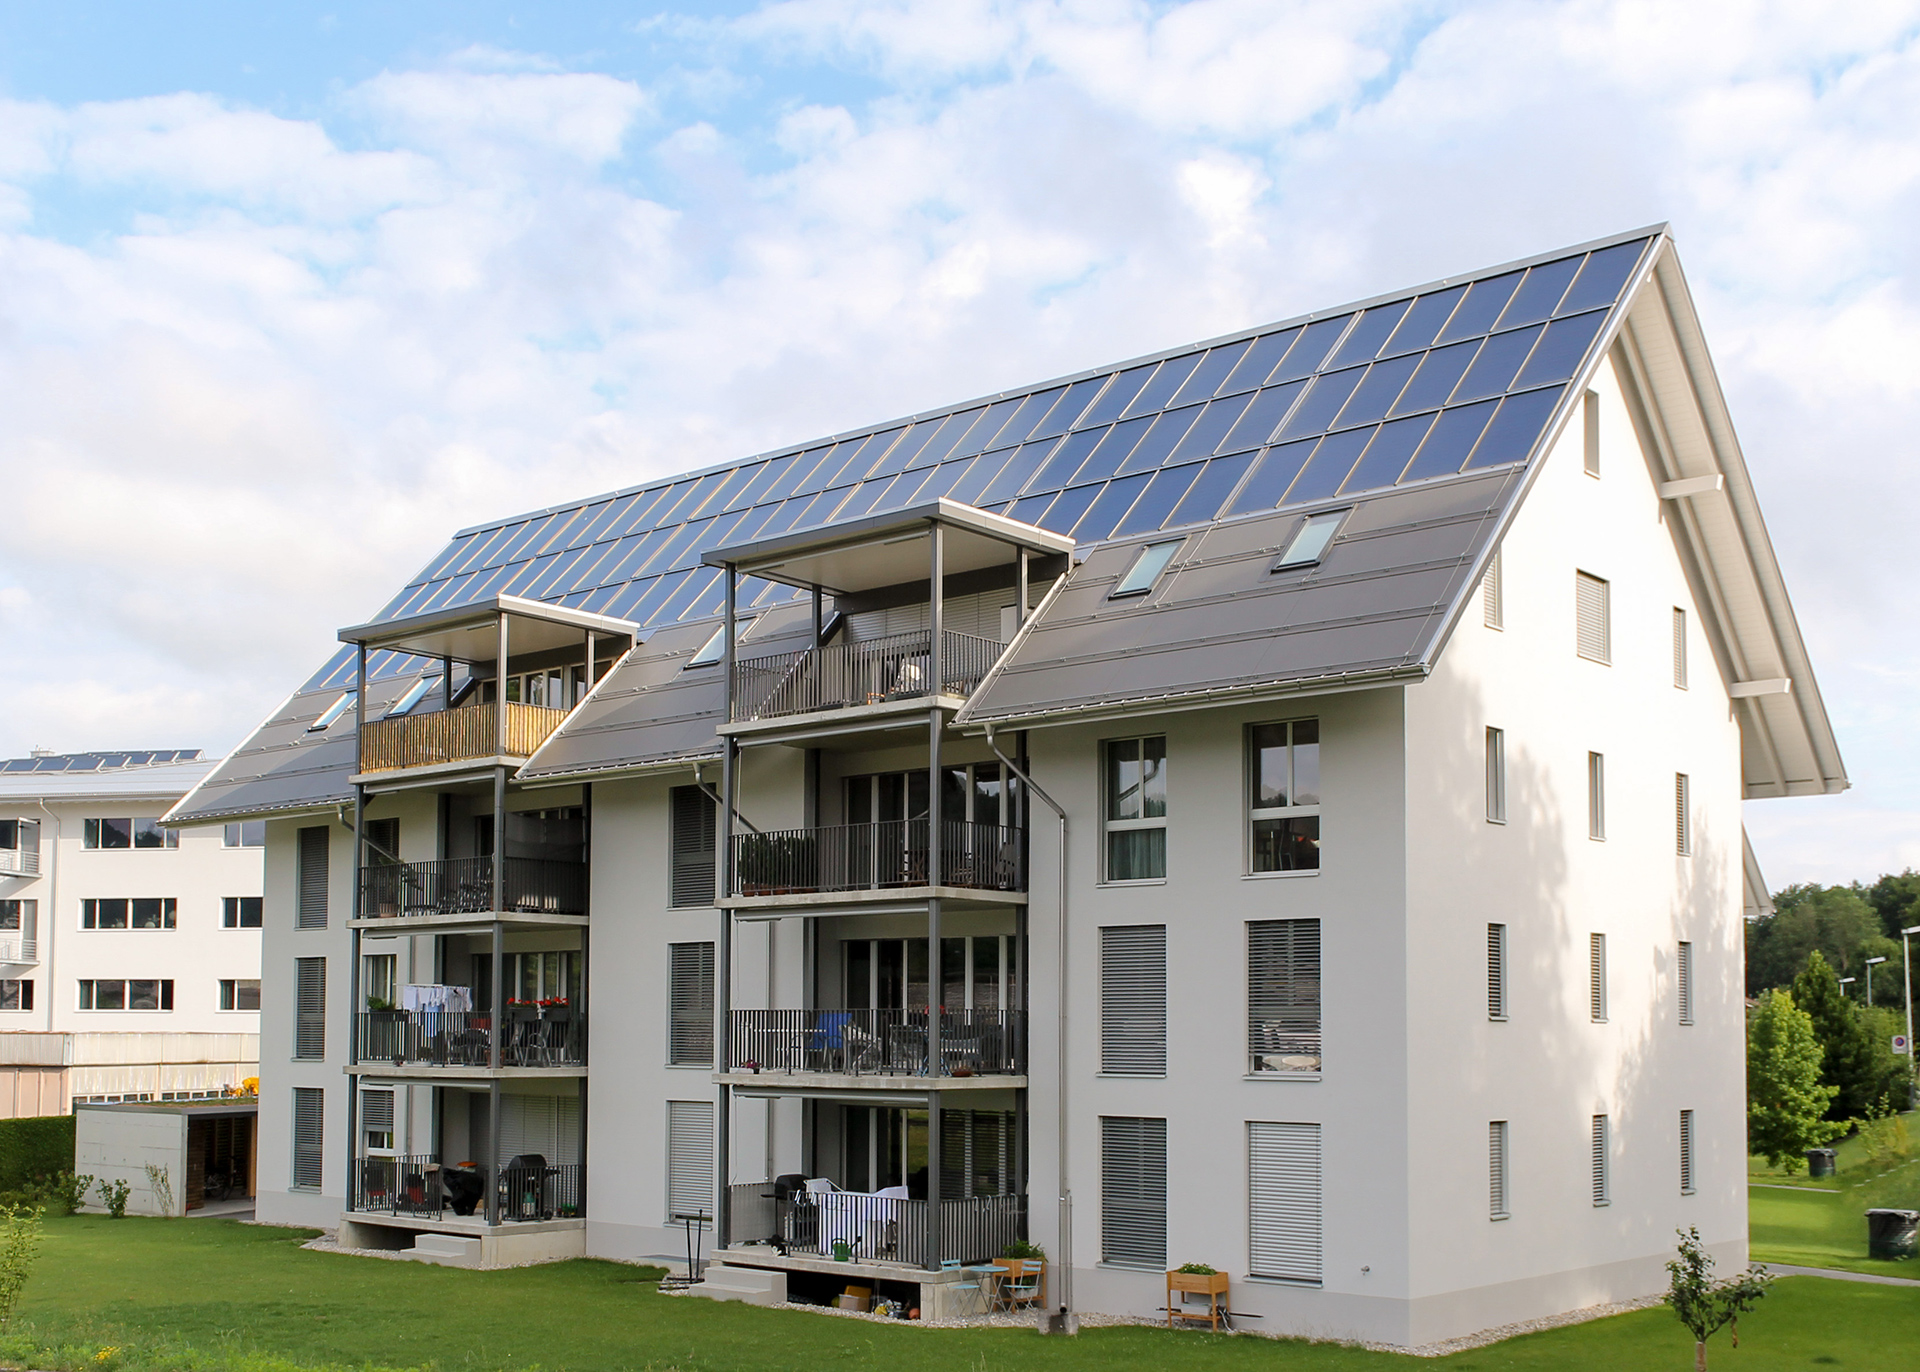 Mehrfamilienhaus mit Solaranlage am Dach